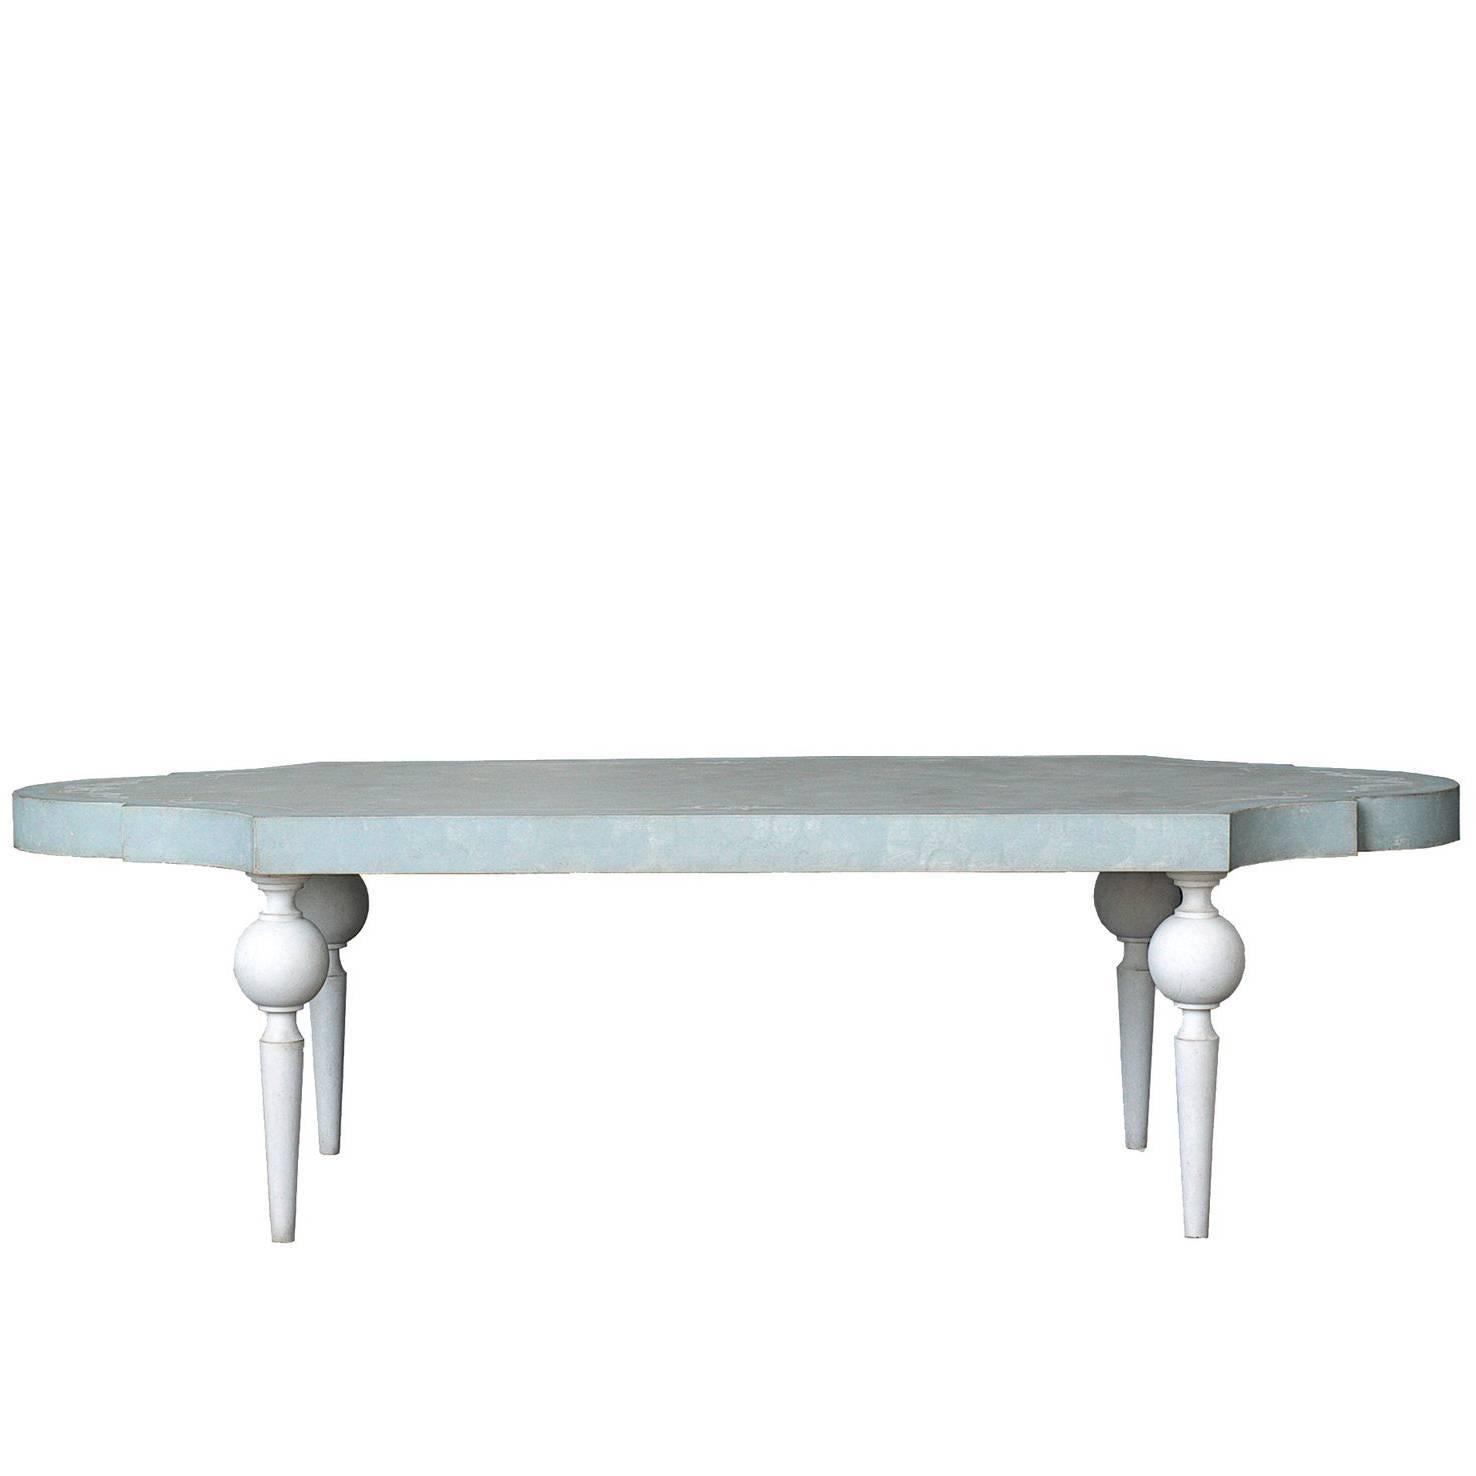 Burano Table